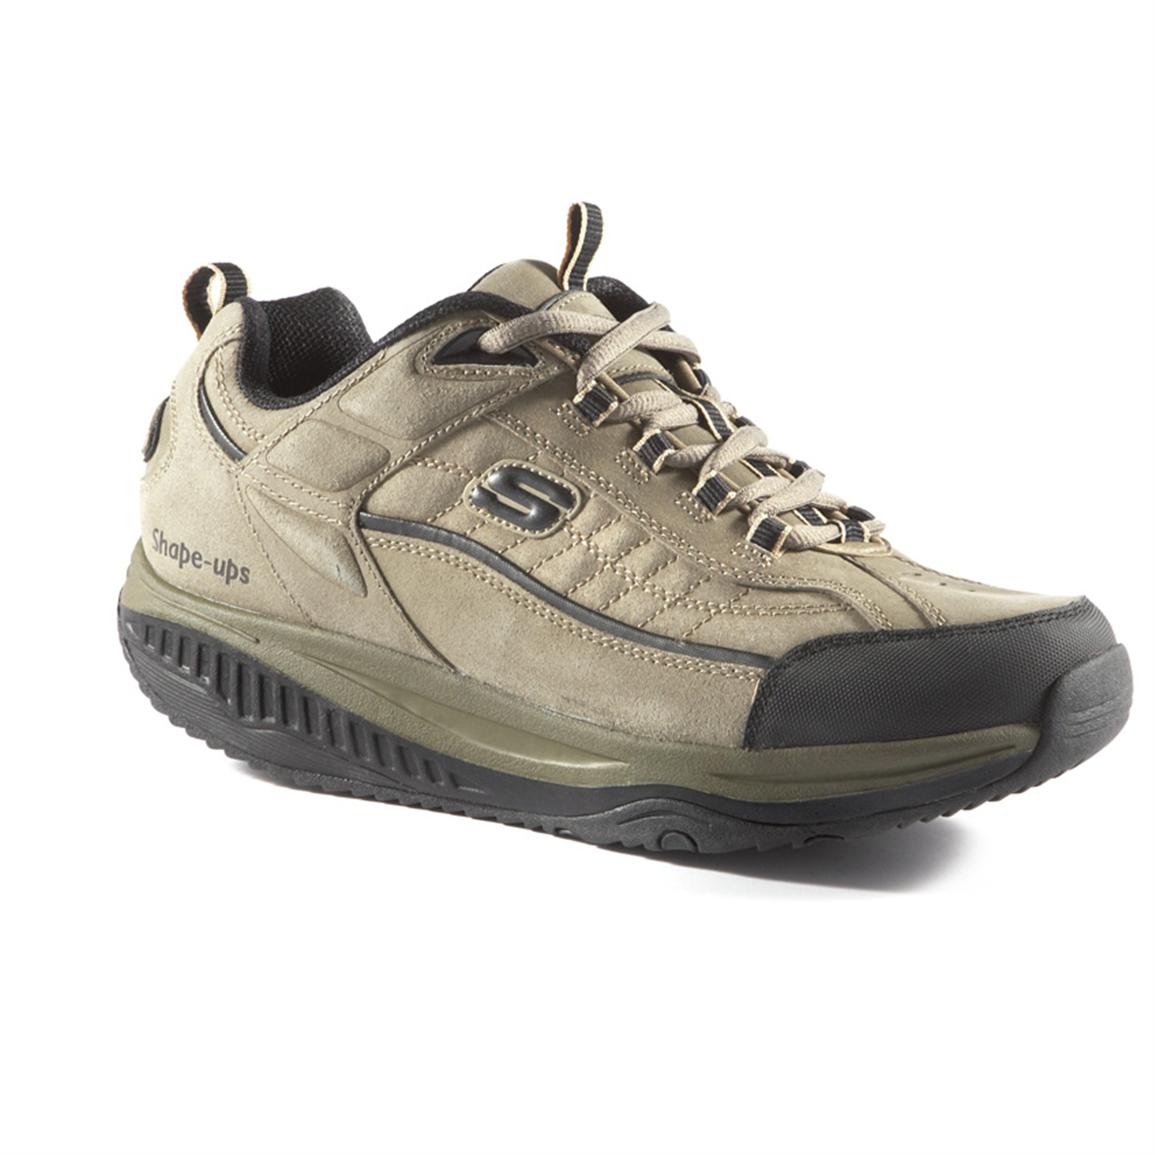 Men's Skechers® XT Shape - ups® Athletic Shoes, Pebble - 220002